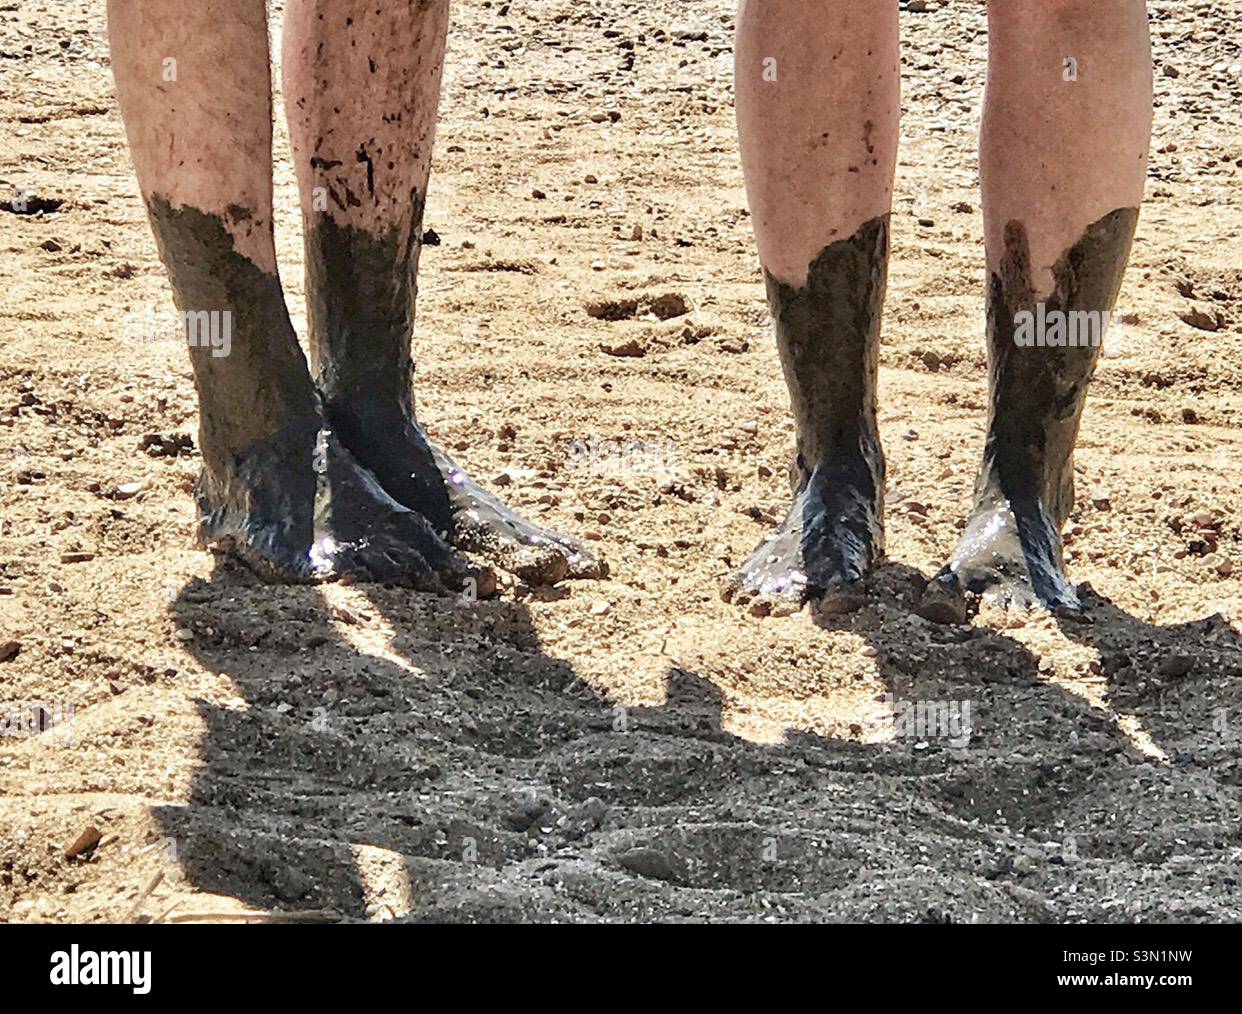 Schlammige Füße - Mann und Frau stehen auf Sand mit schlammigen Füßen vom nahe gelegenen Fluss Stockfoto